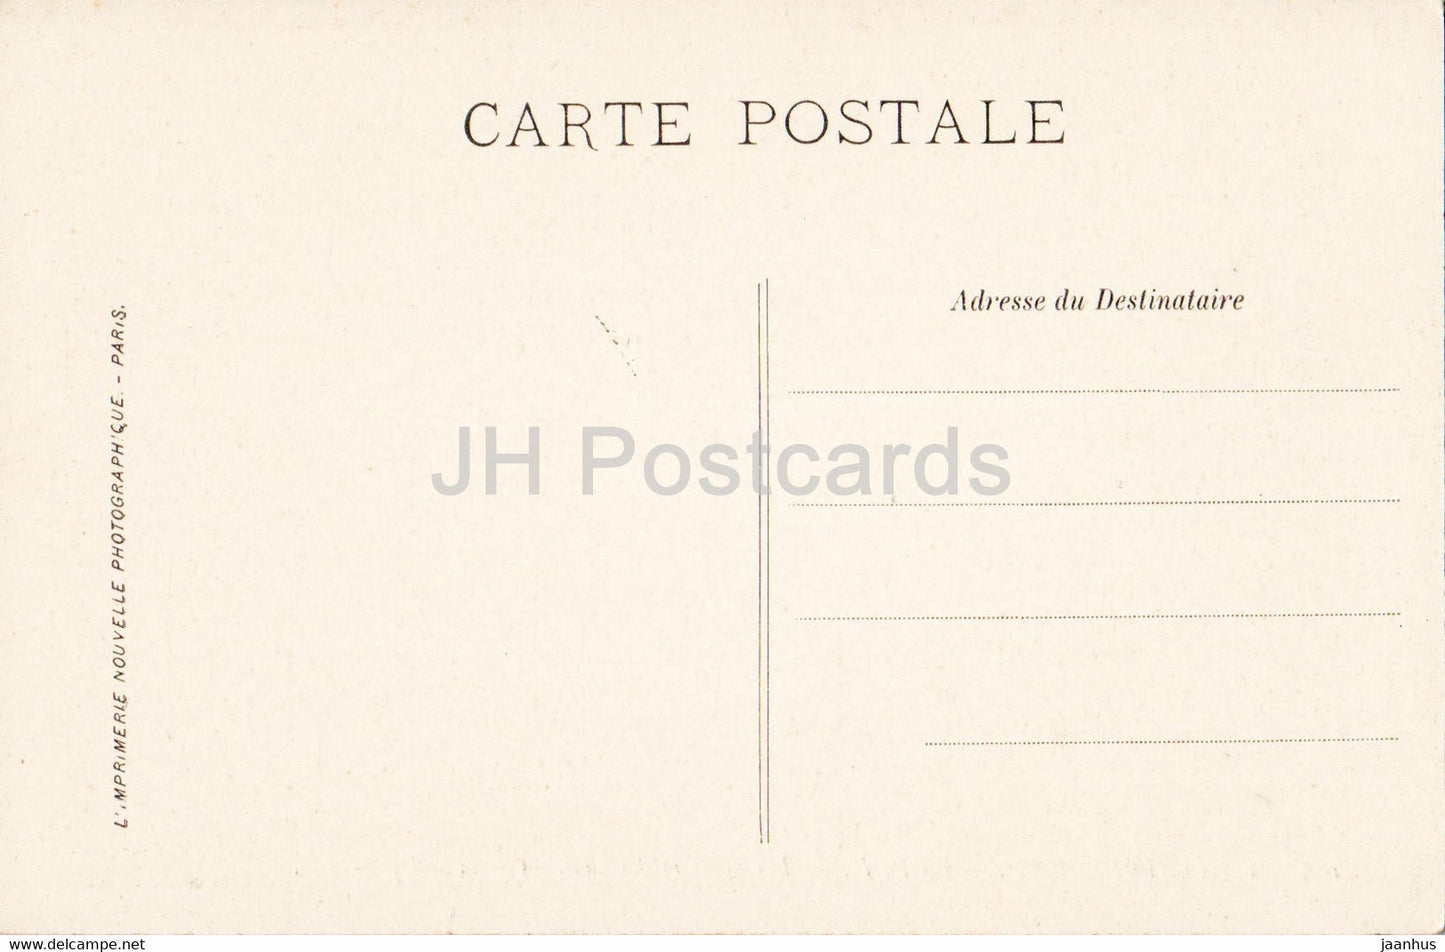 Fontainebleau - La Foret - Les Sentiers des hauteurs de la Solle - 185 - alte Postkarte - Frankreich - gebraucht